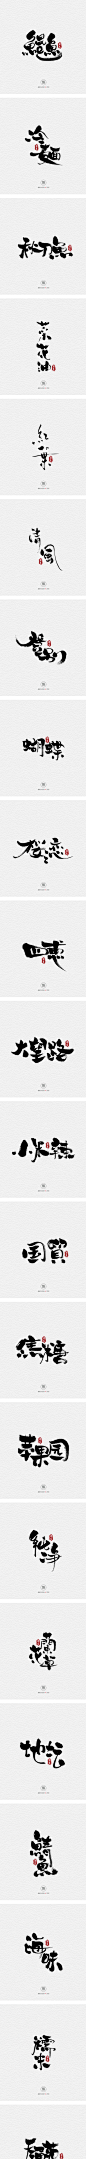 10.31一组手写字-字体传奇网-中国首个字体品牌设计师交流网